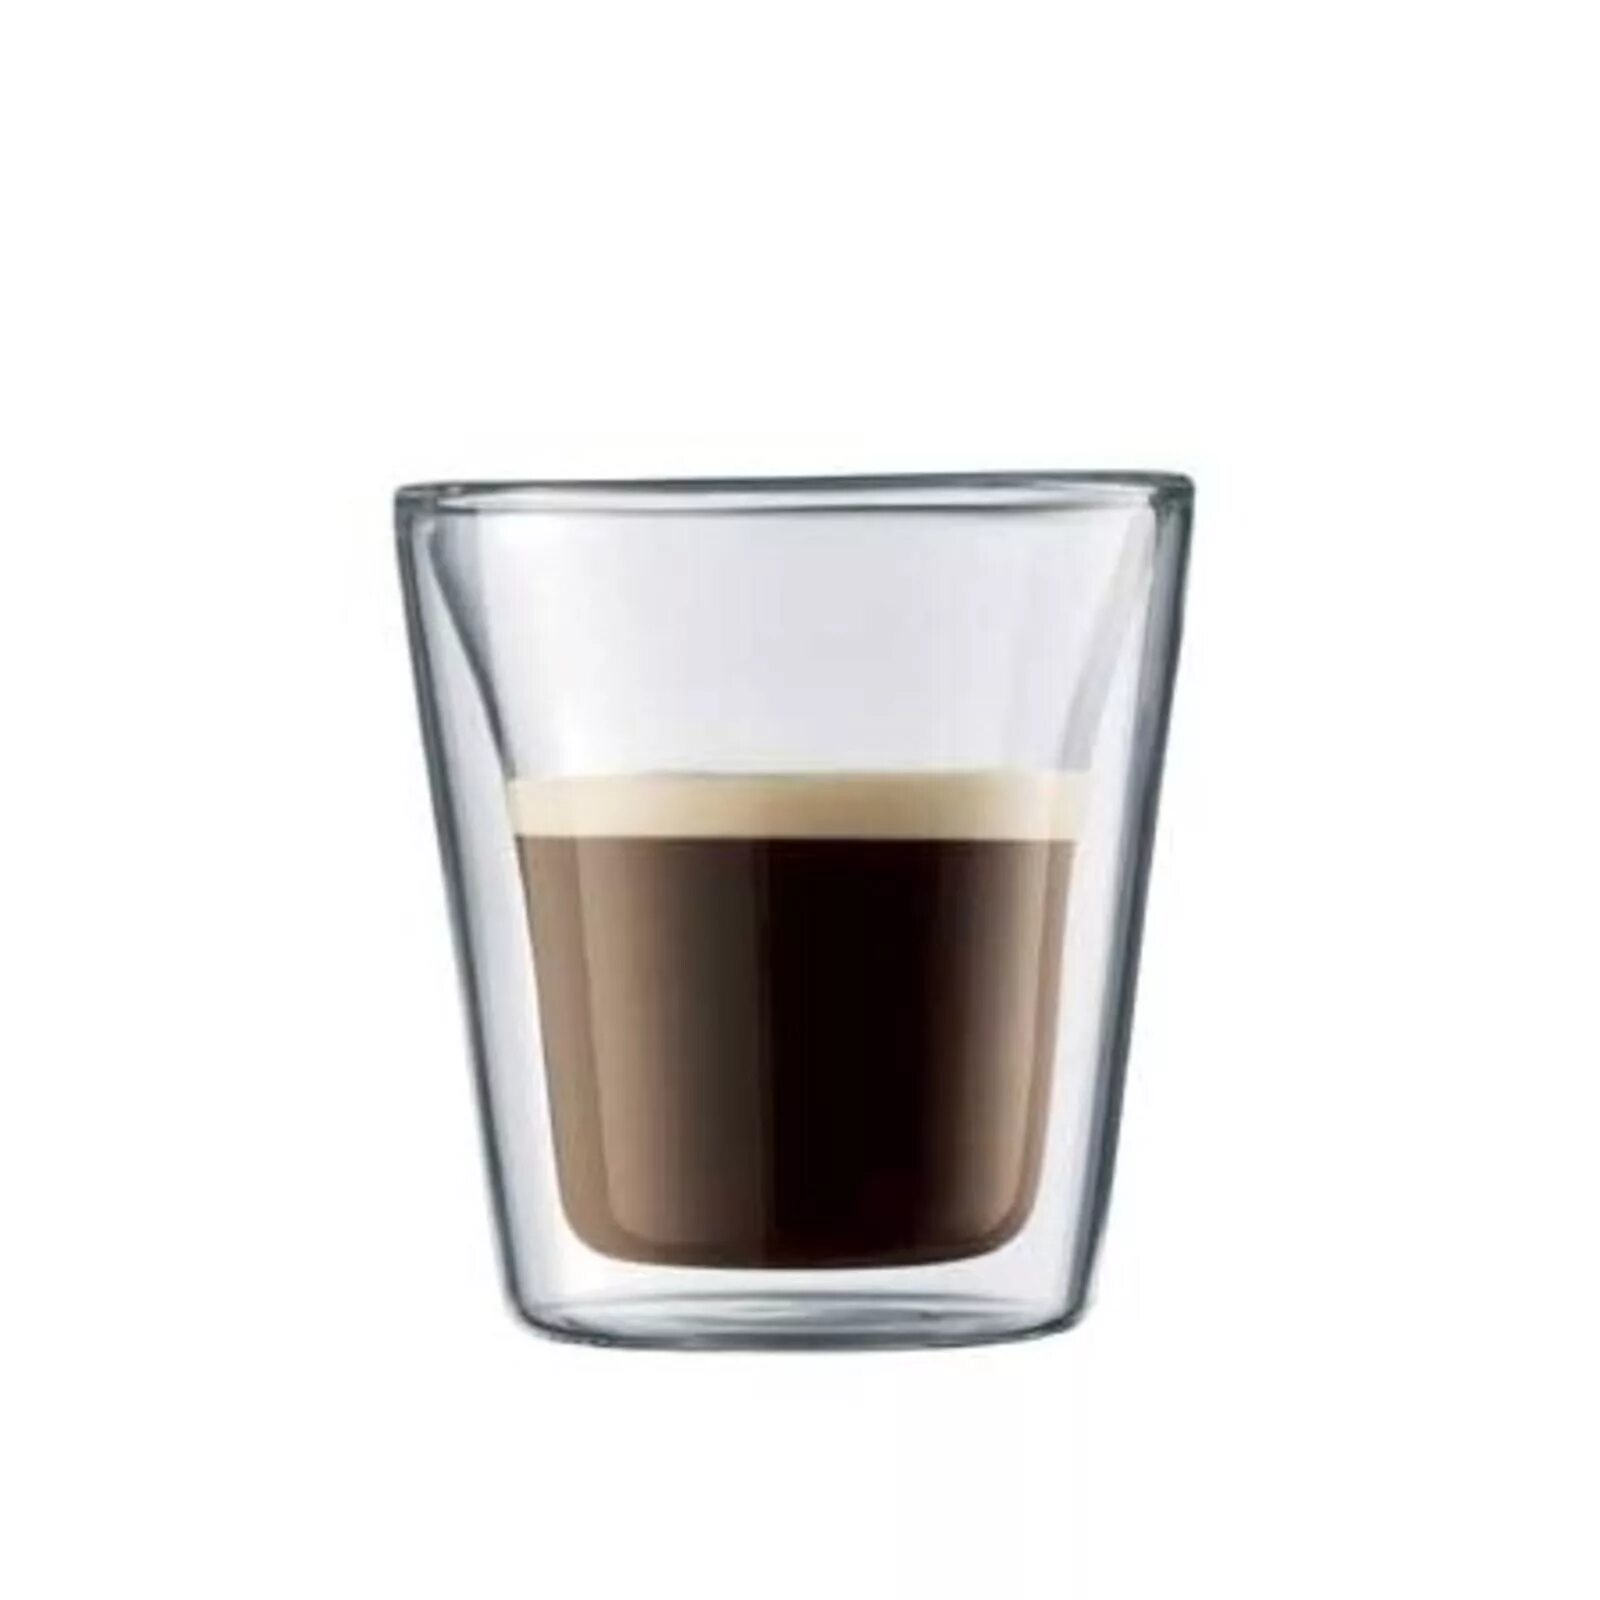 Шот эспрессо. Кружки с двойными стенками Bodum Canteen, прозрачные, 0,4 л - 2 шт. Bodum чашки для кофе. Чашка Bodum для кофе стеклянная.